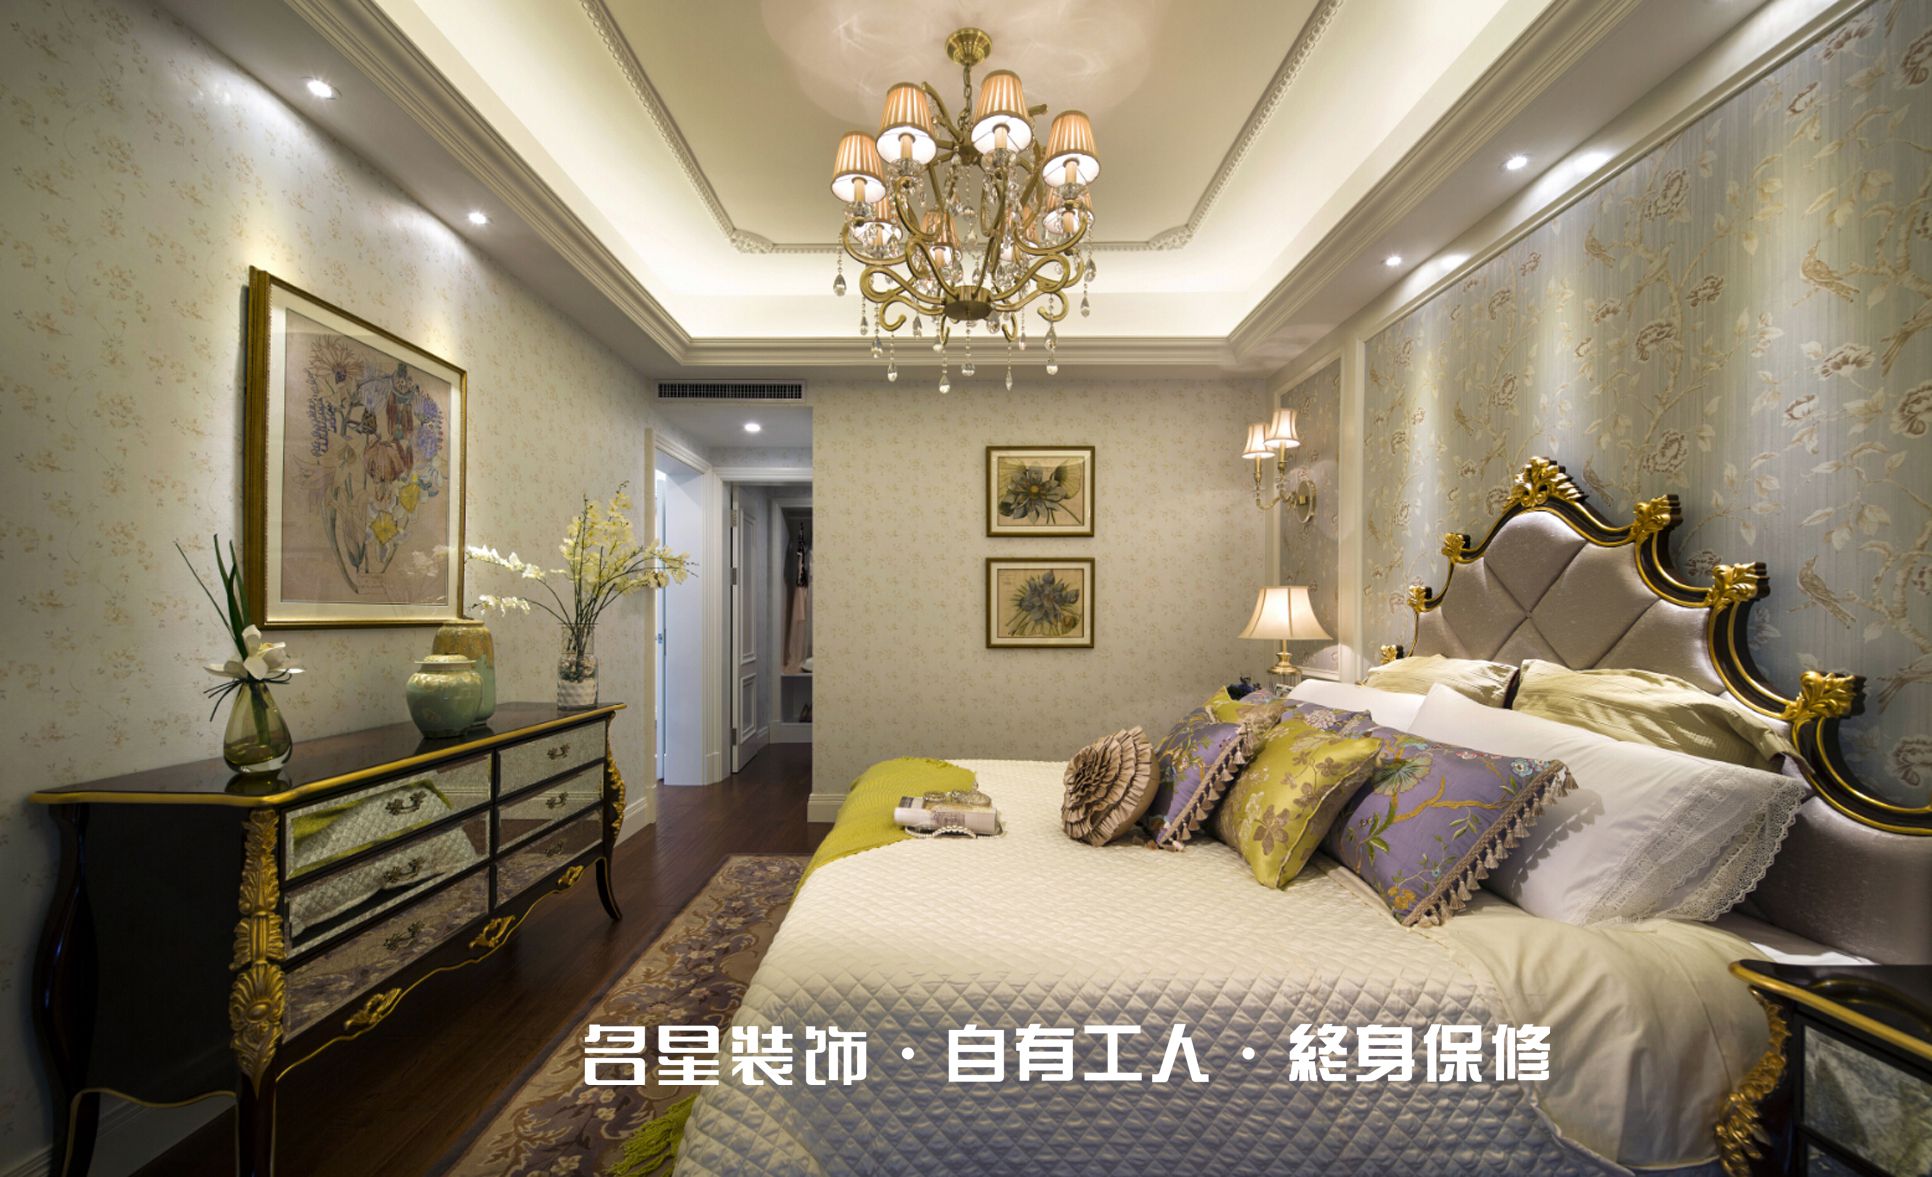 二居 欧式 卧室图片来自名星装饰在福星惠誉红桥城的分享